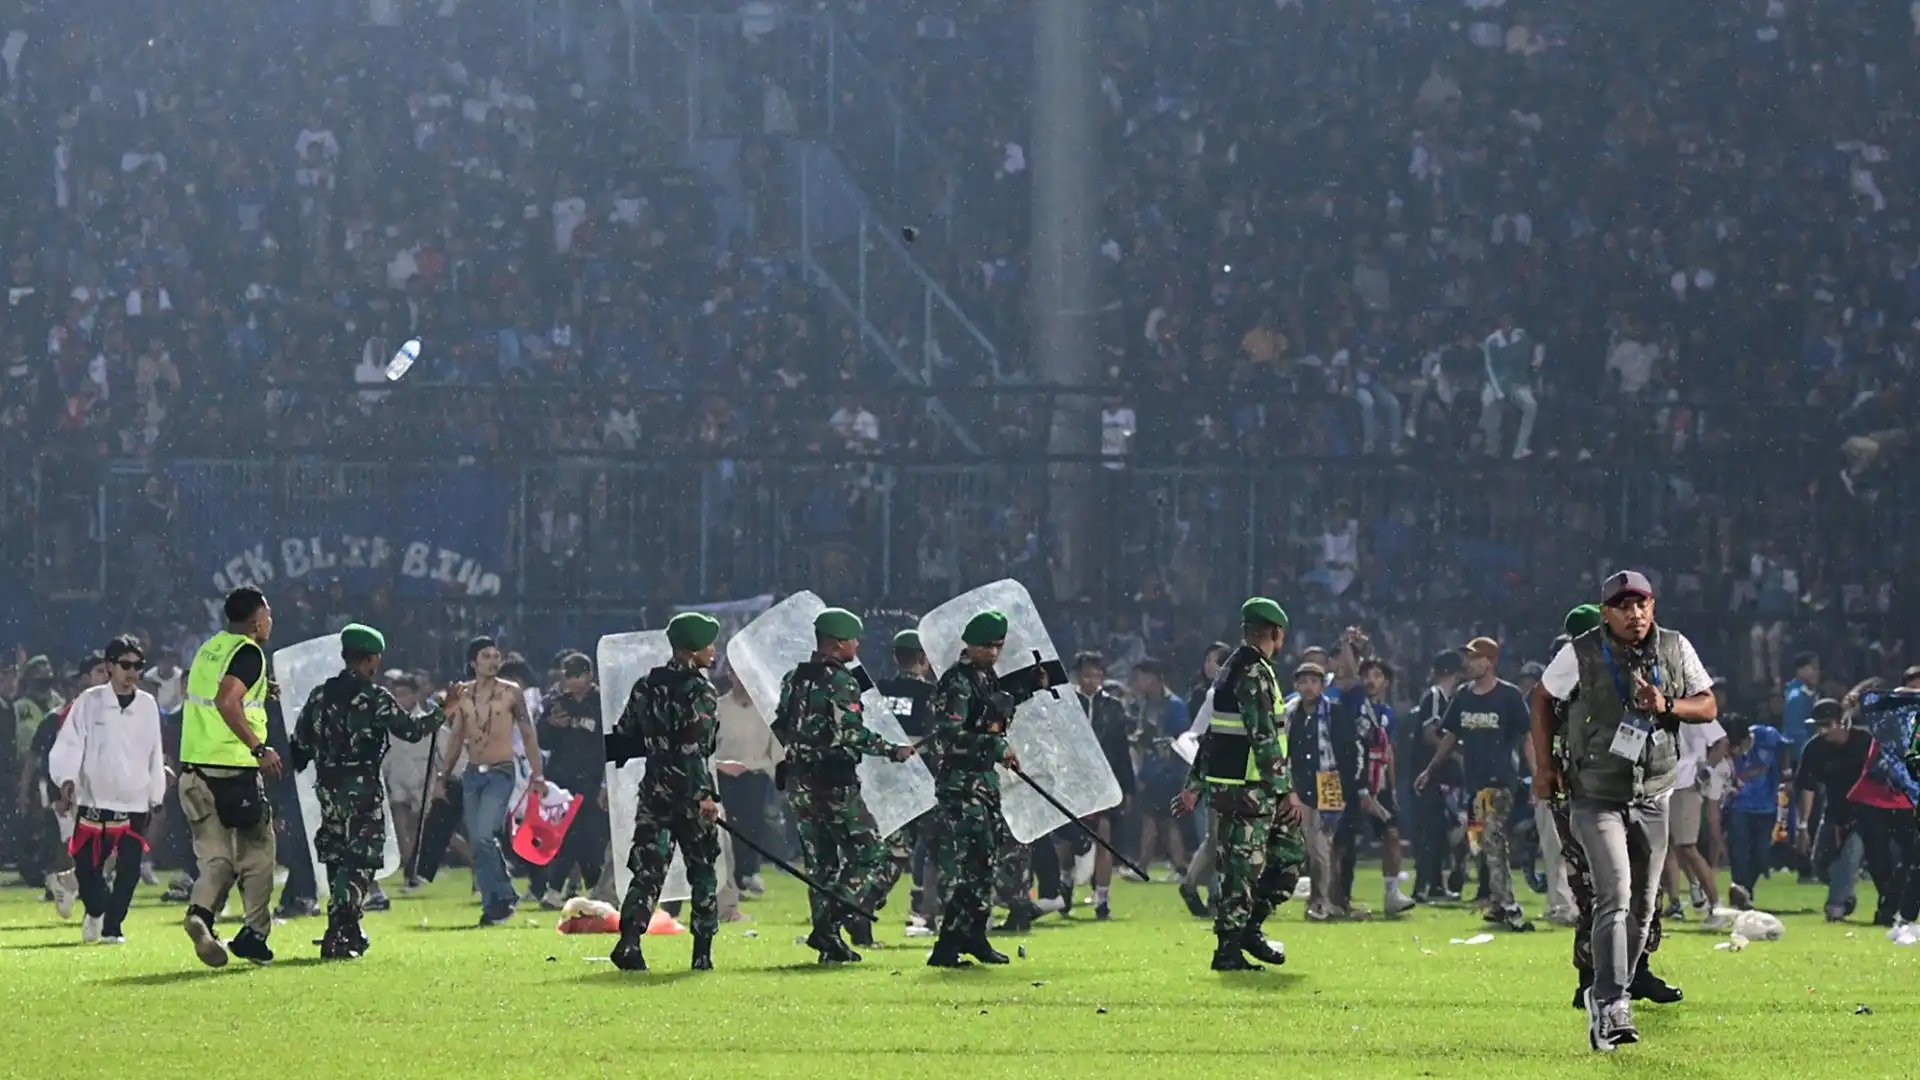 Una tragedia immane si è consumata nella notte tra l'1 e il 2 ottobre in Indonesia: l'Arema Fc ha perso contro il Persebaya Surabaya per 3-2 e i tifosi hanno invaso il campo, scontrandosi con il pubblico ospite